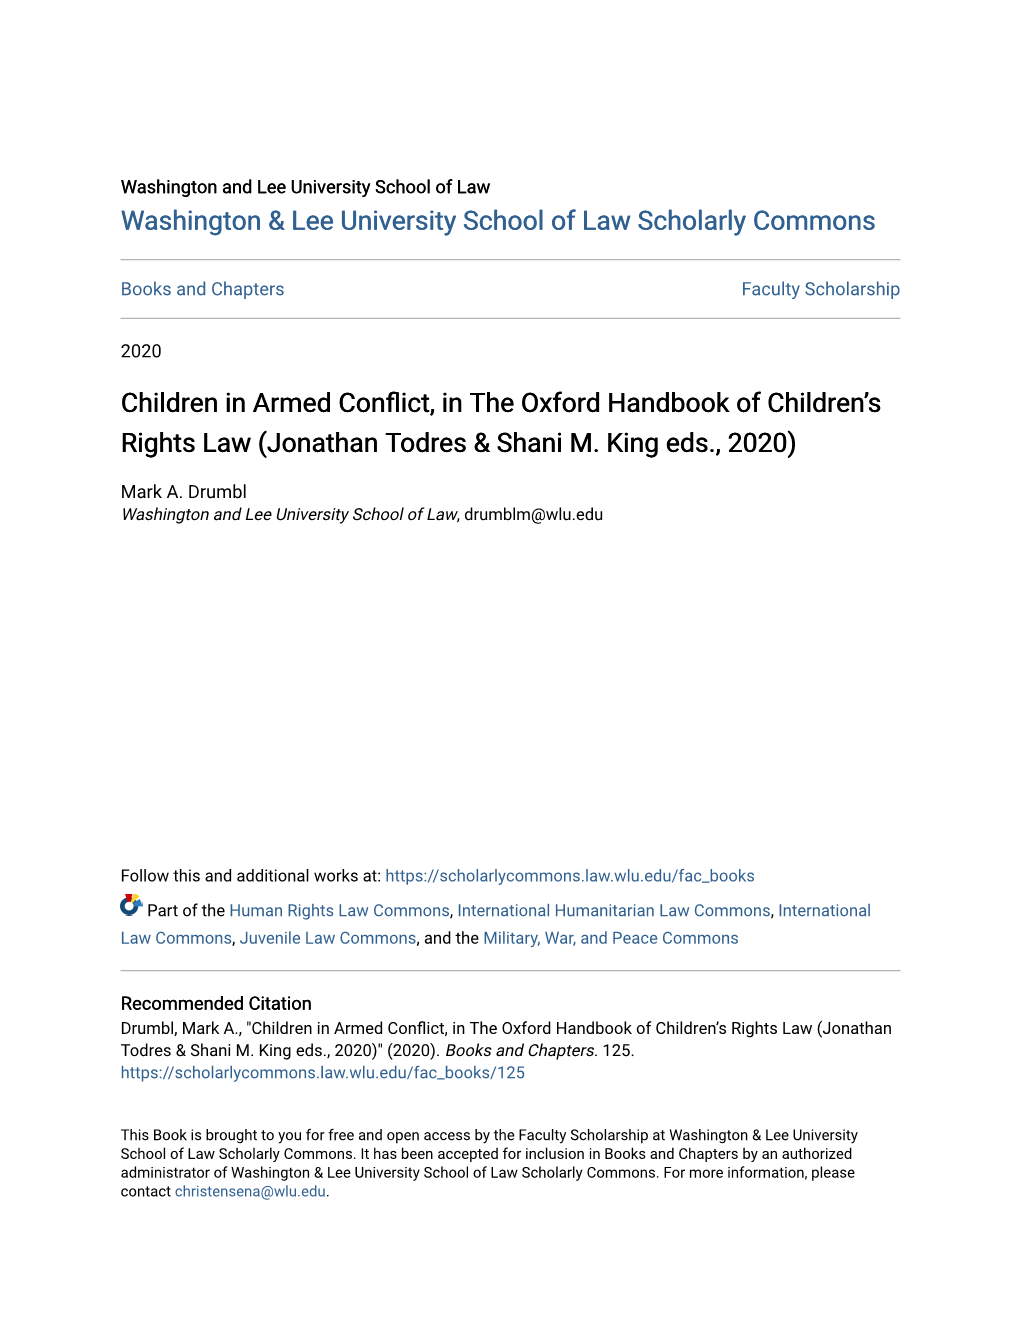 Children in Armed Conflict, in the Oxford Handbook of Childrenâ•Žs